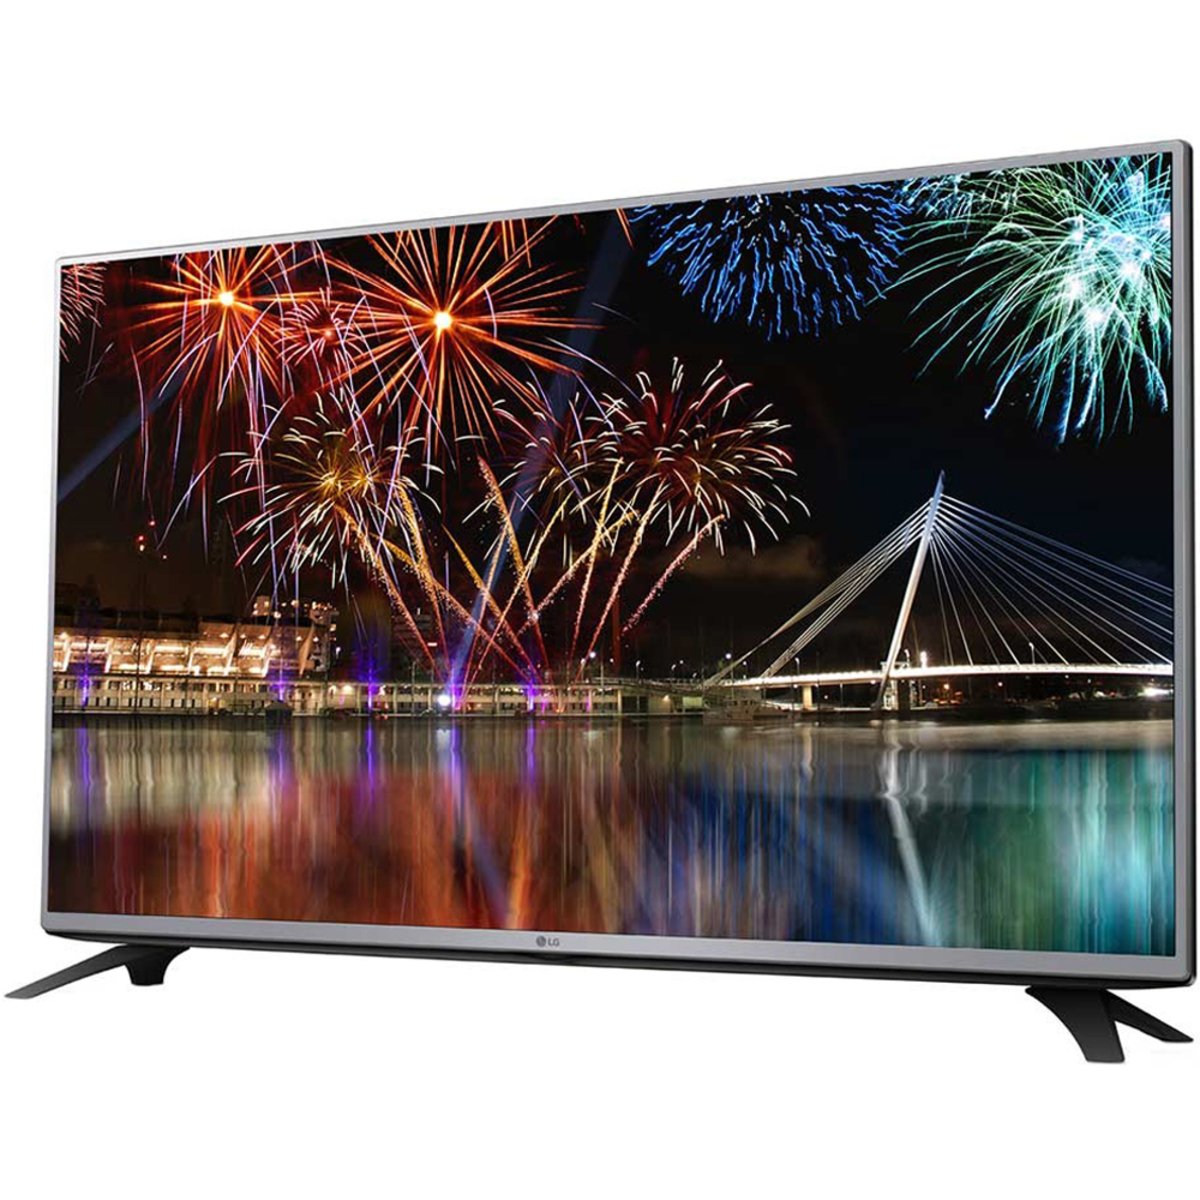 LG Full HD Smart LED TV 43LF590 43inch